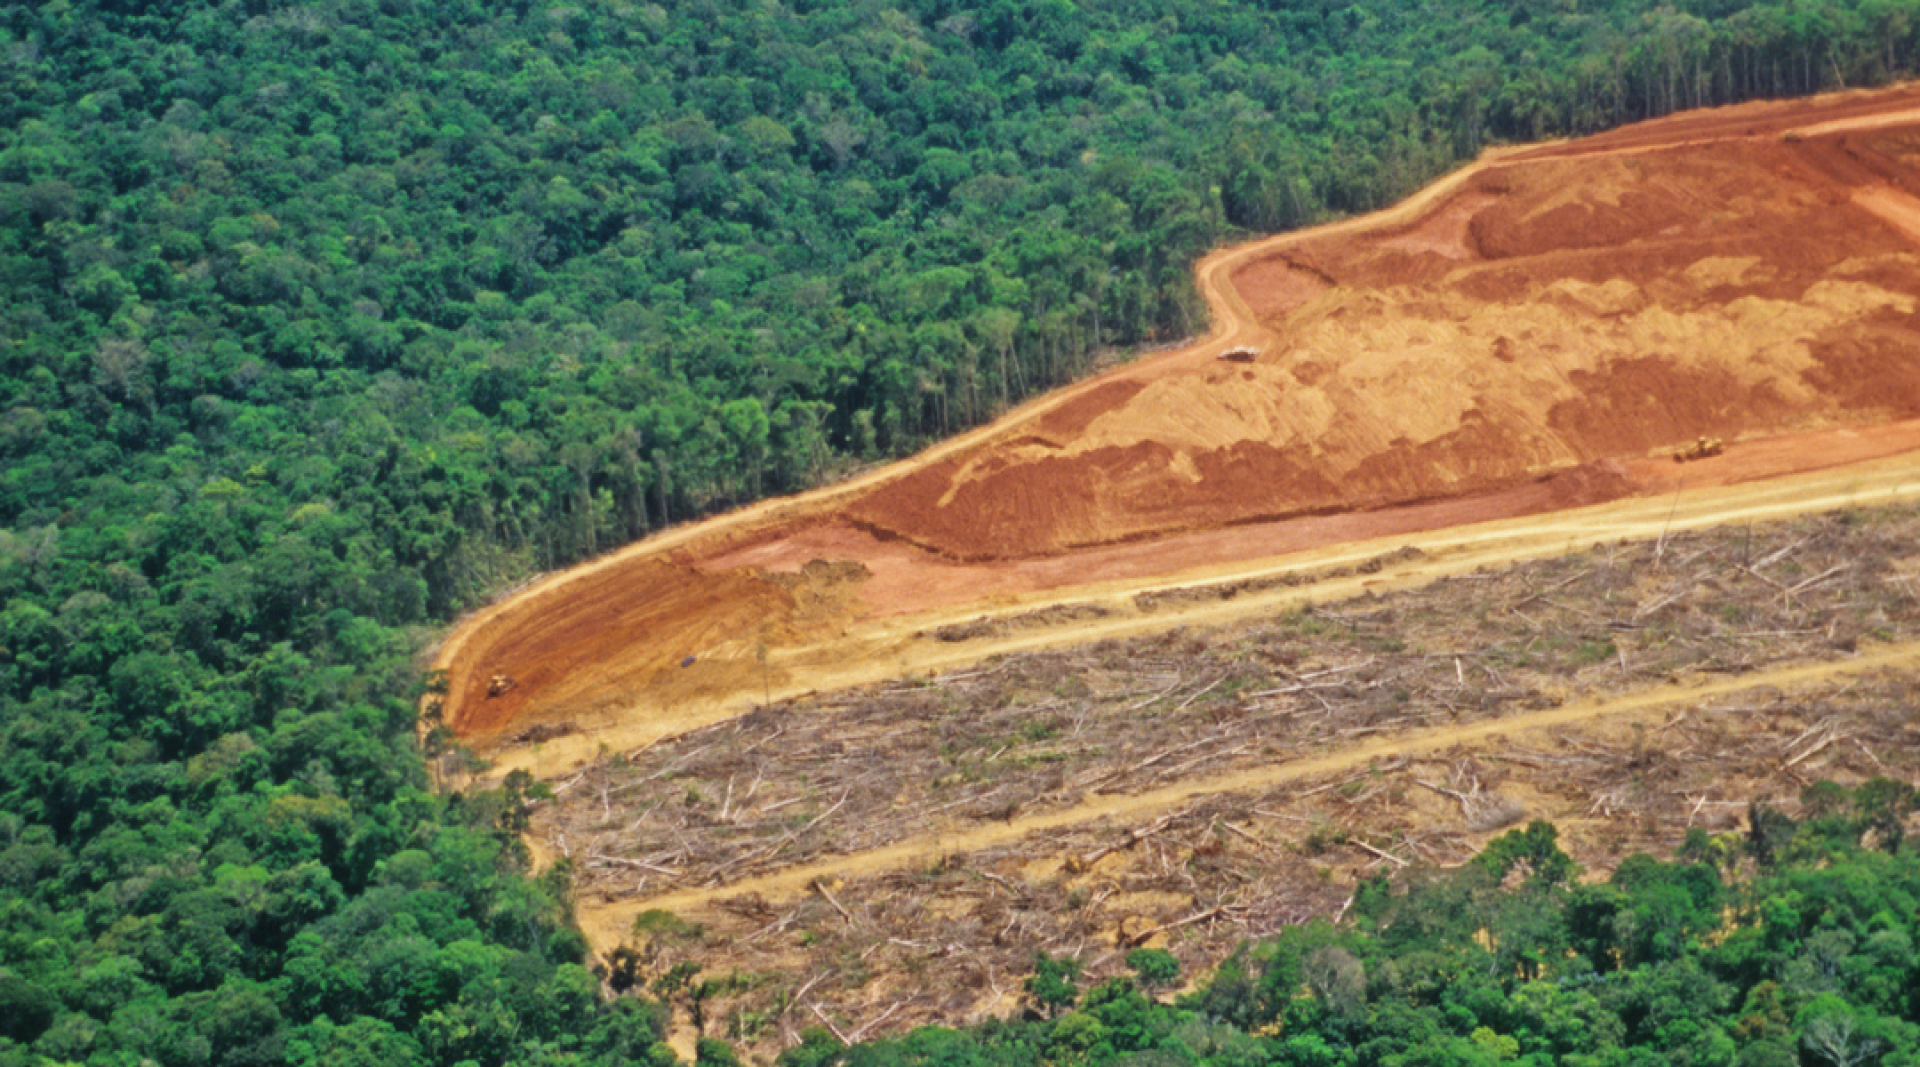 Os acordos ambientais voluntários são eficientes no combate ao desmatamento?